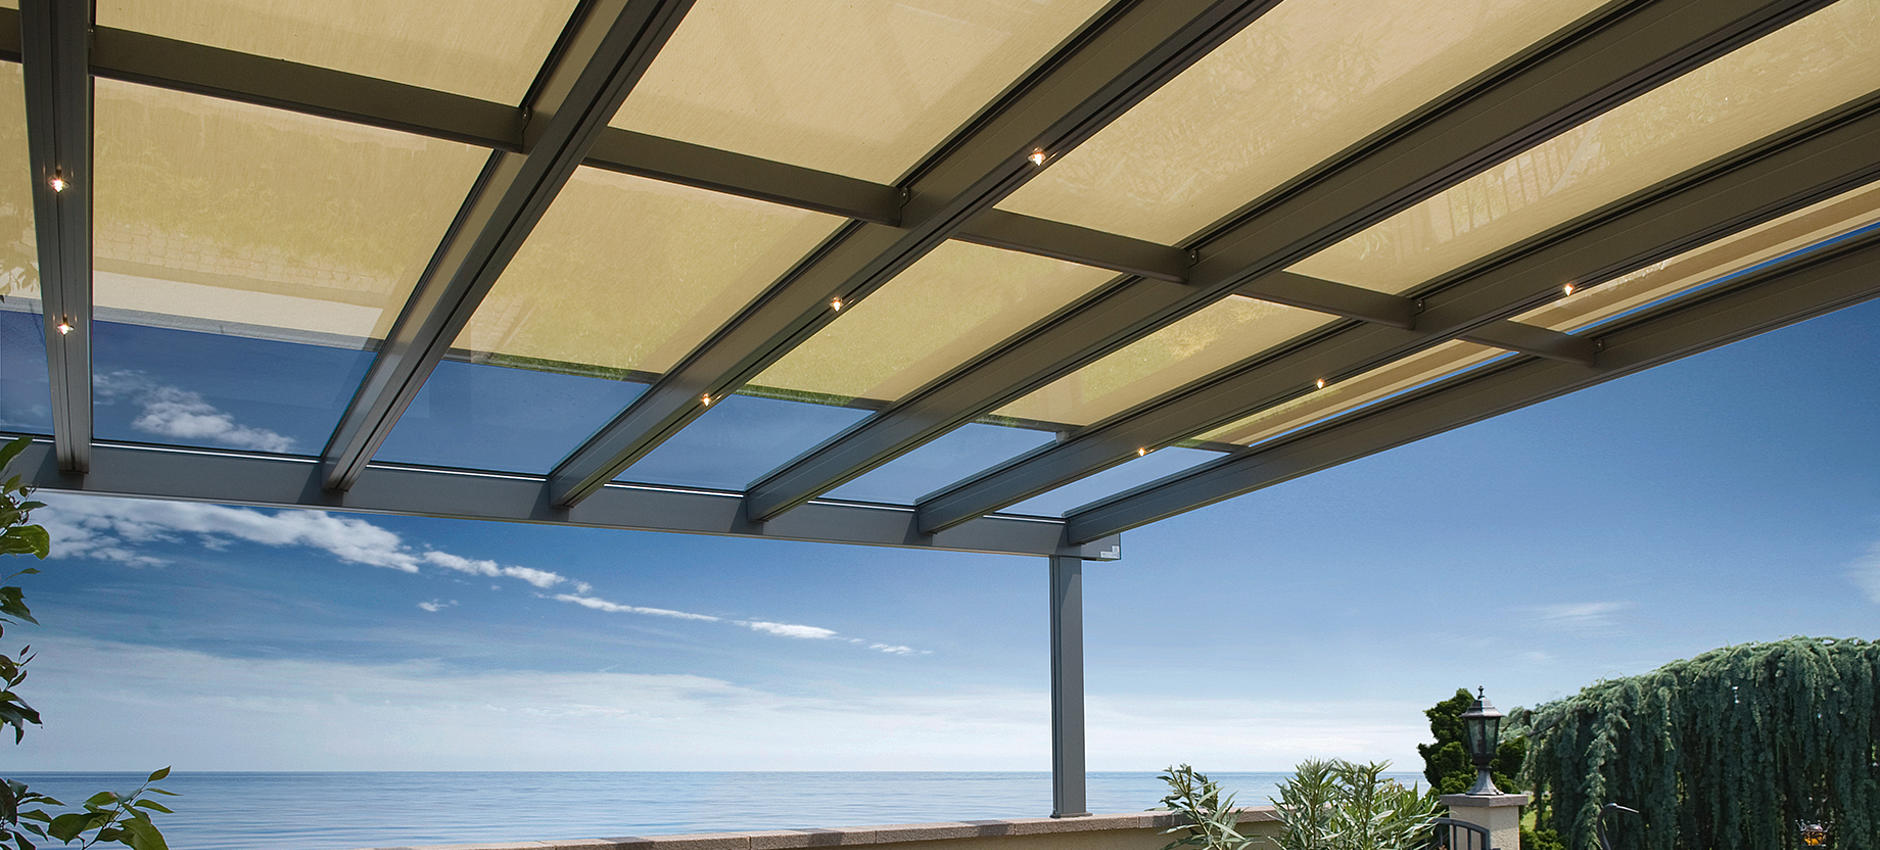 TERRADO GP5100 / GP5110 Glasdachsystem als Überdachung mit integrierter Markise für optmialen Sonnenschutz 